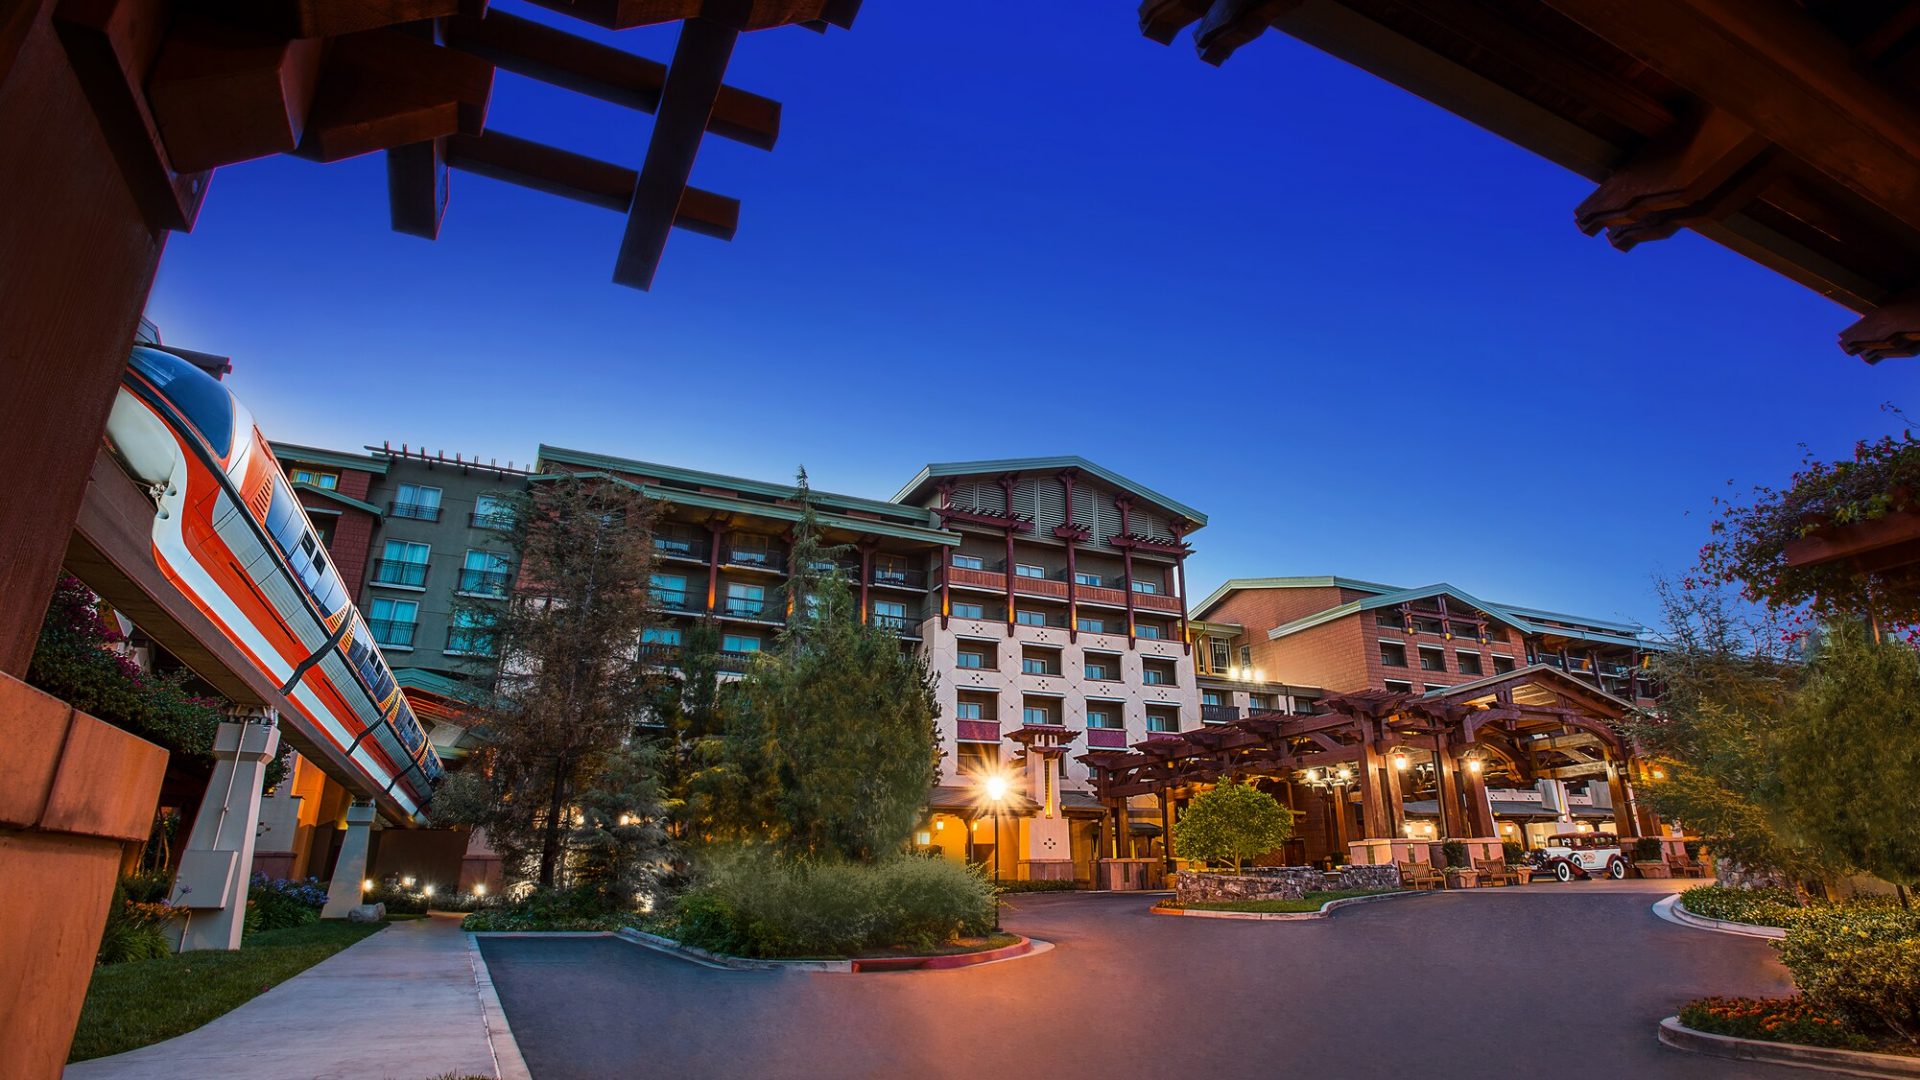 Saiba mais sobre o Disney’s Grand Californian Hotel & Spa